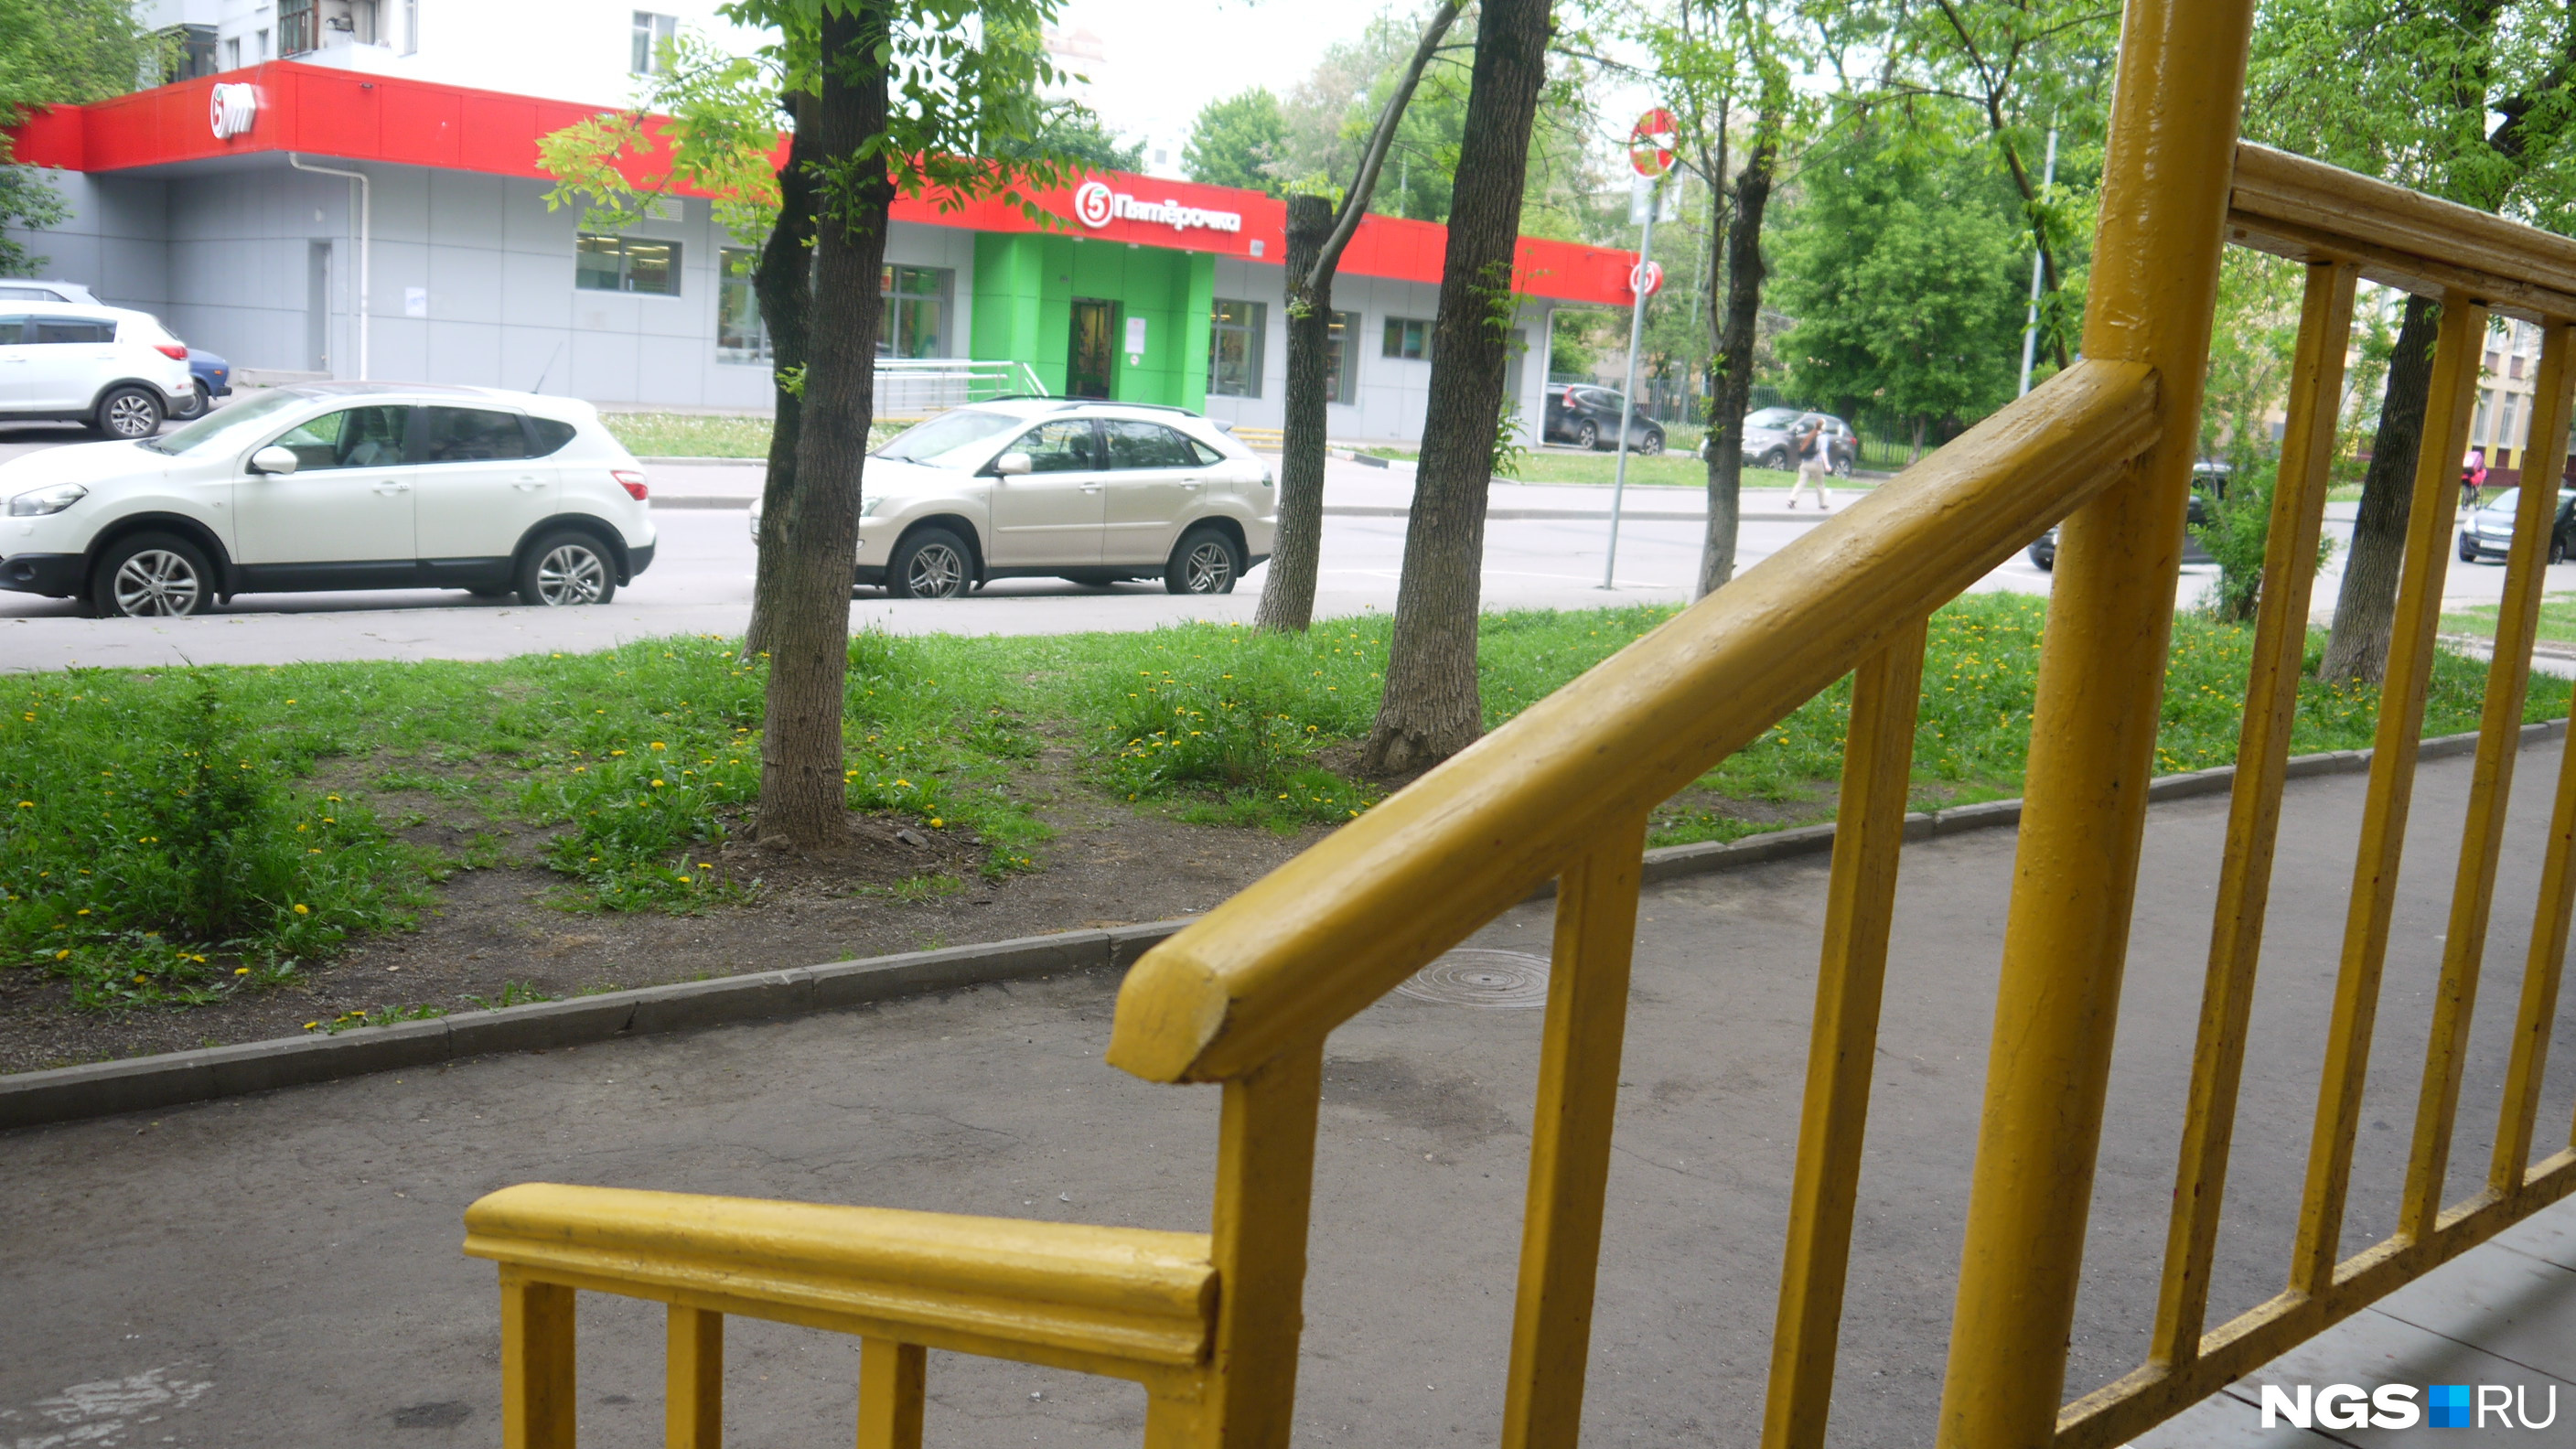 Вид на супермаркет «Пятерочка» с крыльца магазина «Чижик» на 5-й Кожуховской улице в Москве